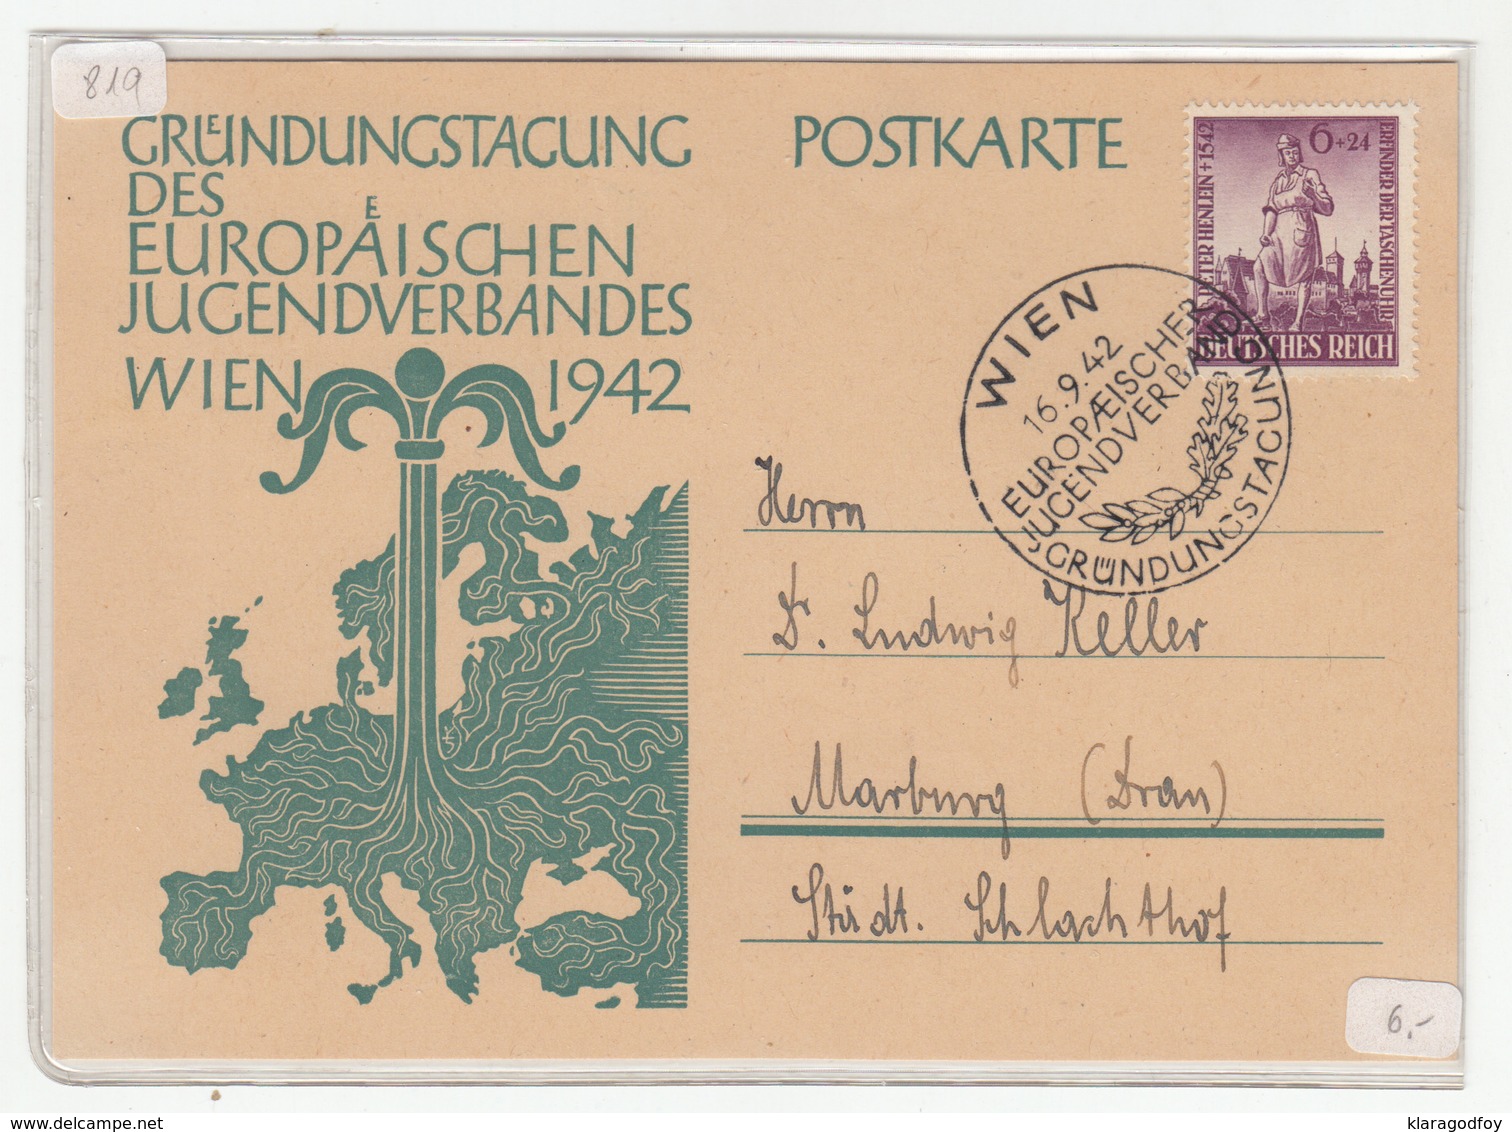 Germany, Gründungstagung Des Europäischen Jugendverbandes 1942 Wien Special Pmk & Illustrated Postkarte Travelled - Briefe U. Dokumente